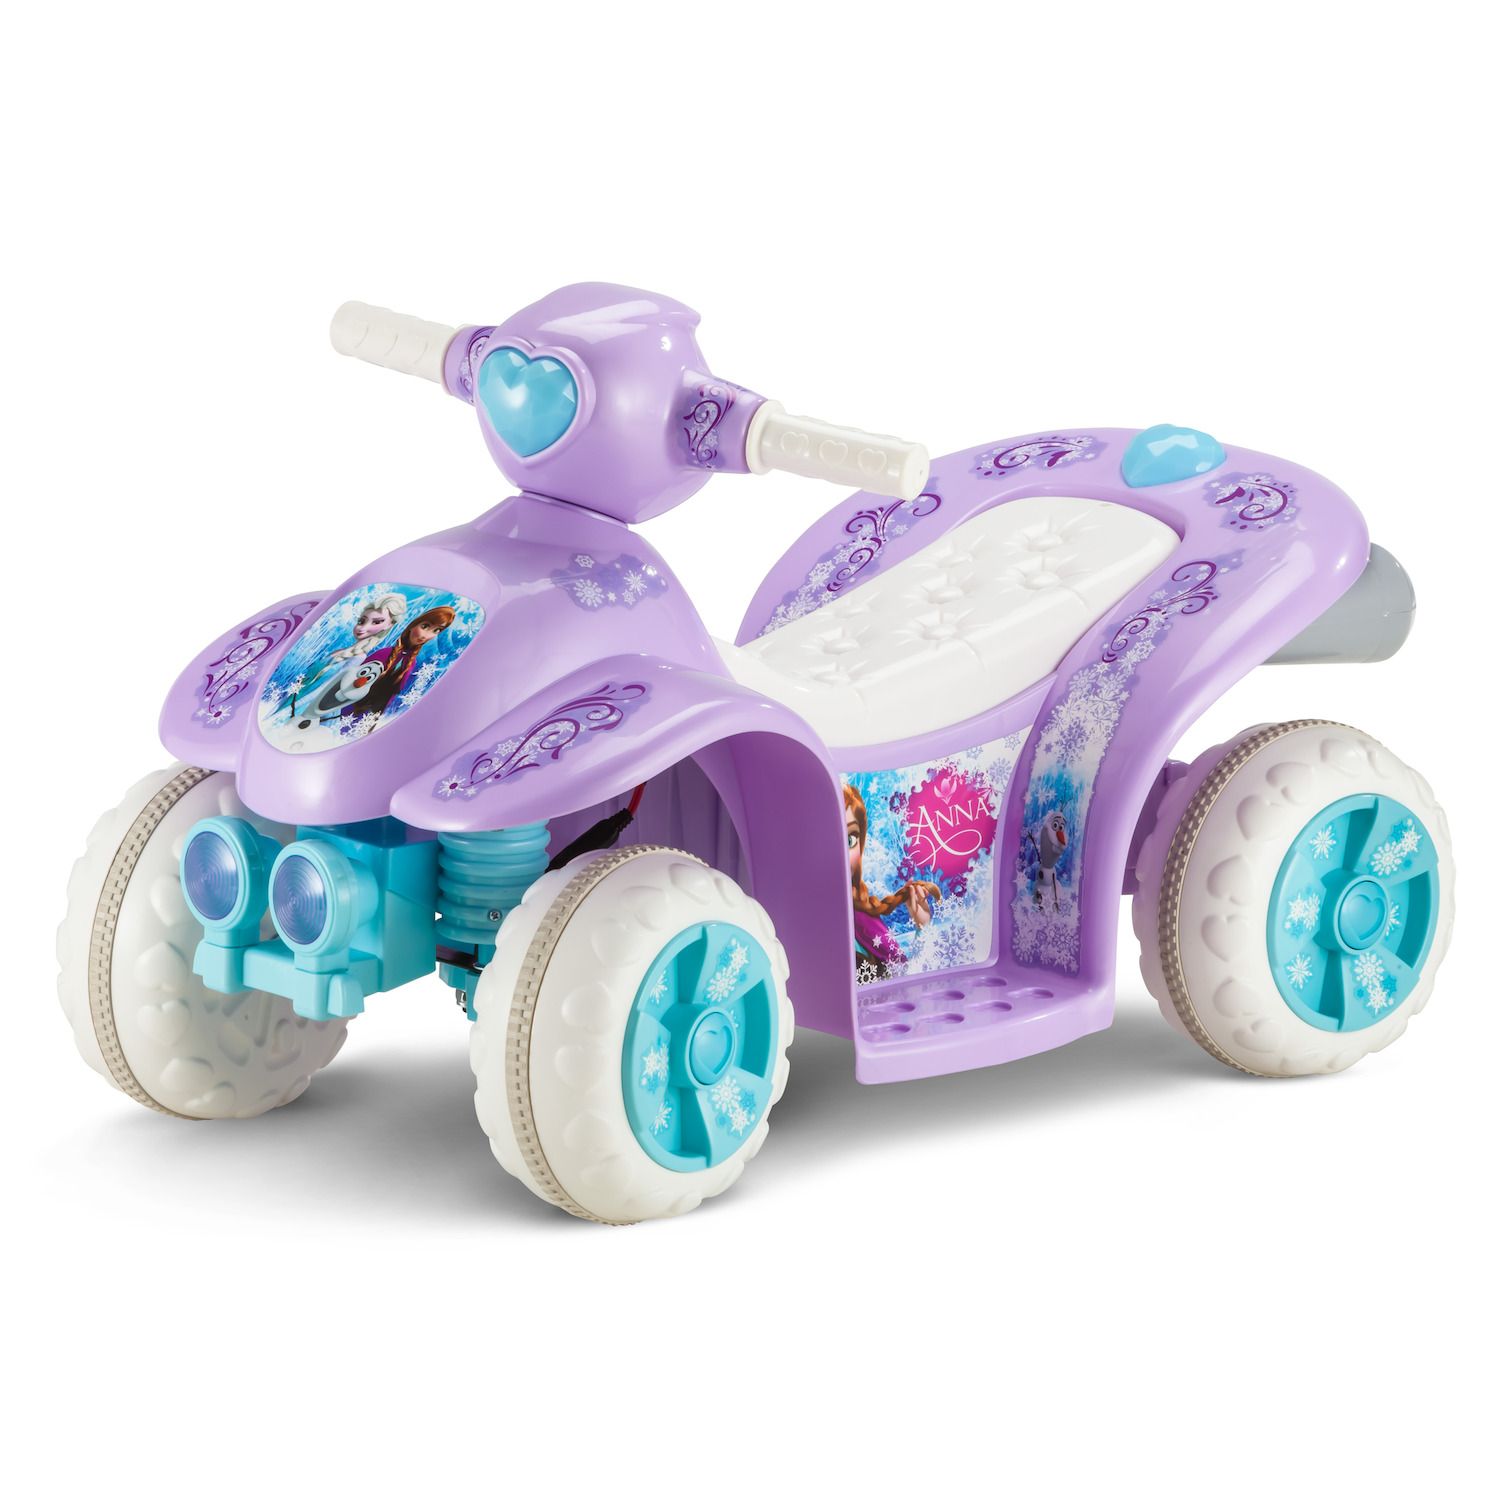 kohls toddler riding toys